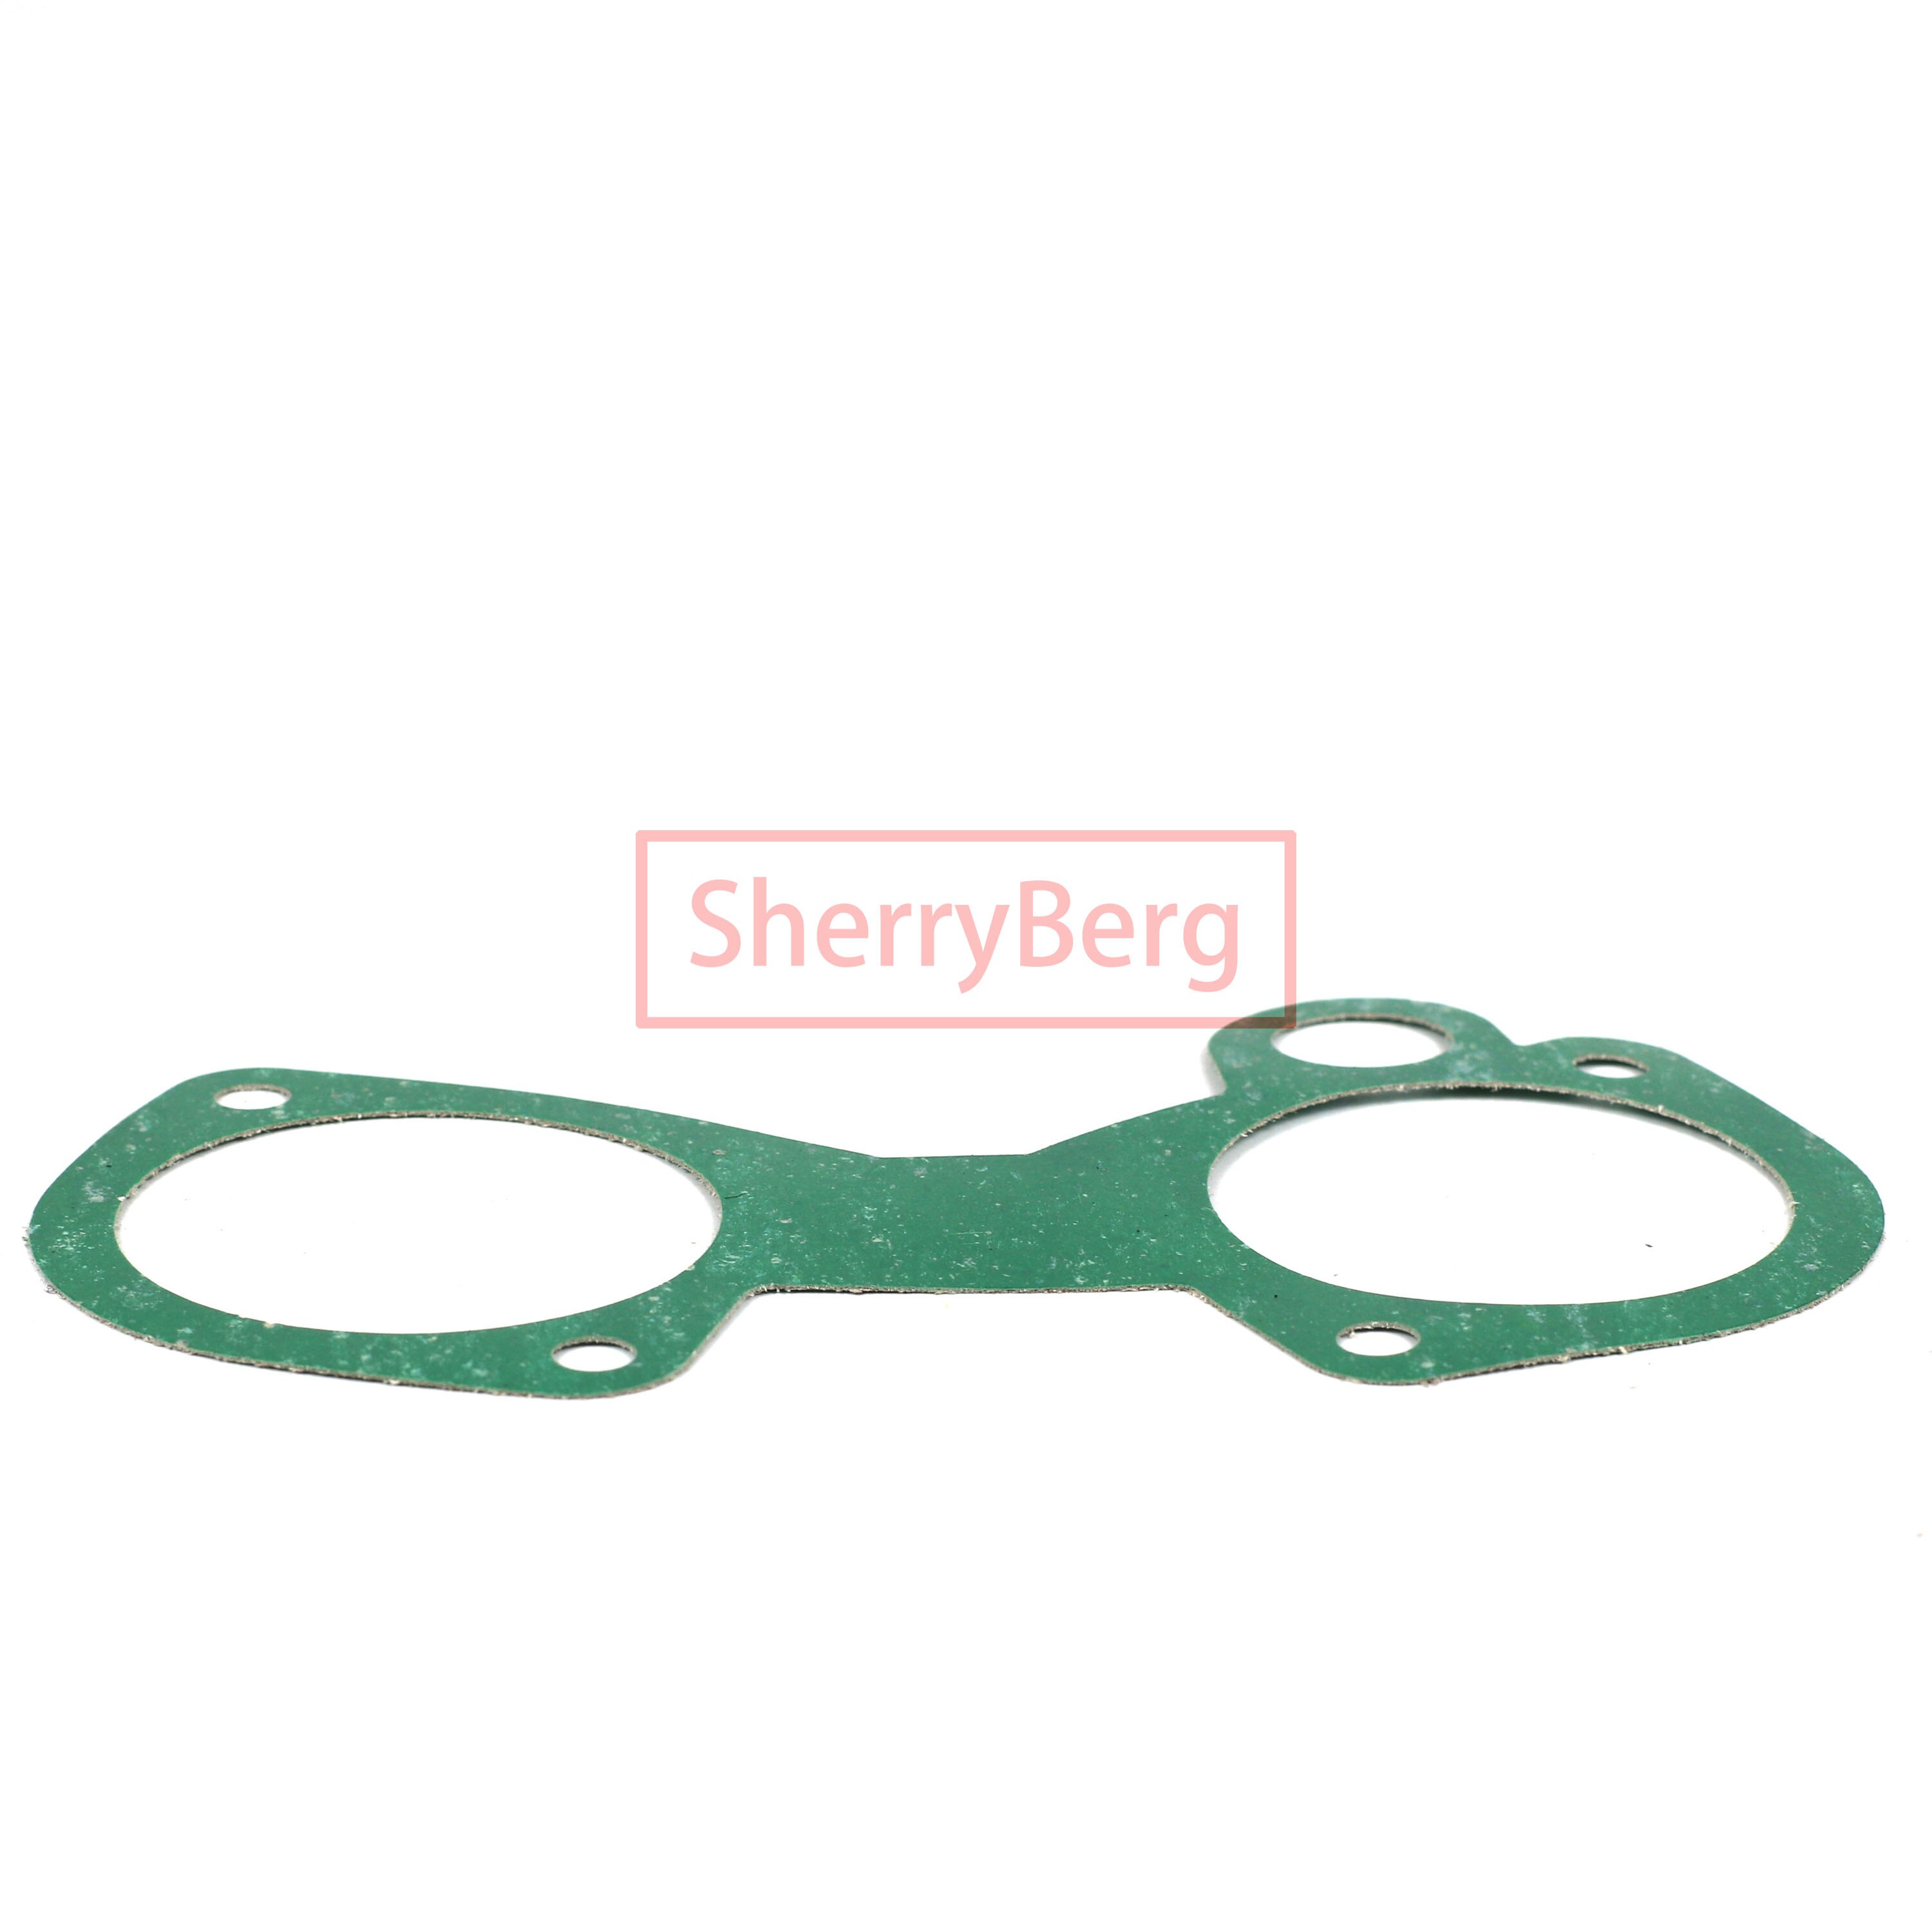 Sherryberg fajs empi luftfilter 65mm 2 " 1/2 rengøringsmiddel til weber 40 45 48 50 dcoe, solex addhe, dellorto dhla karburator carb filter